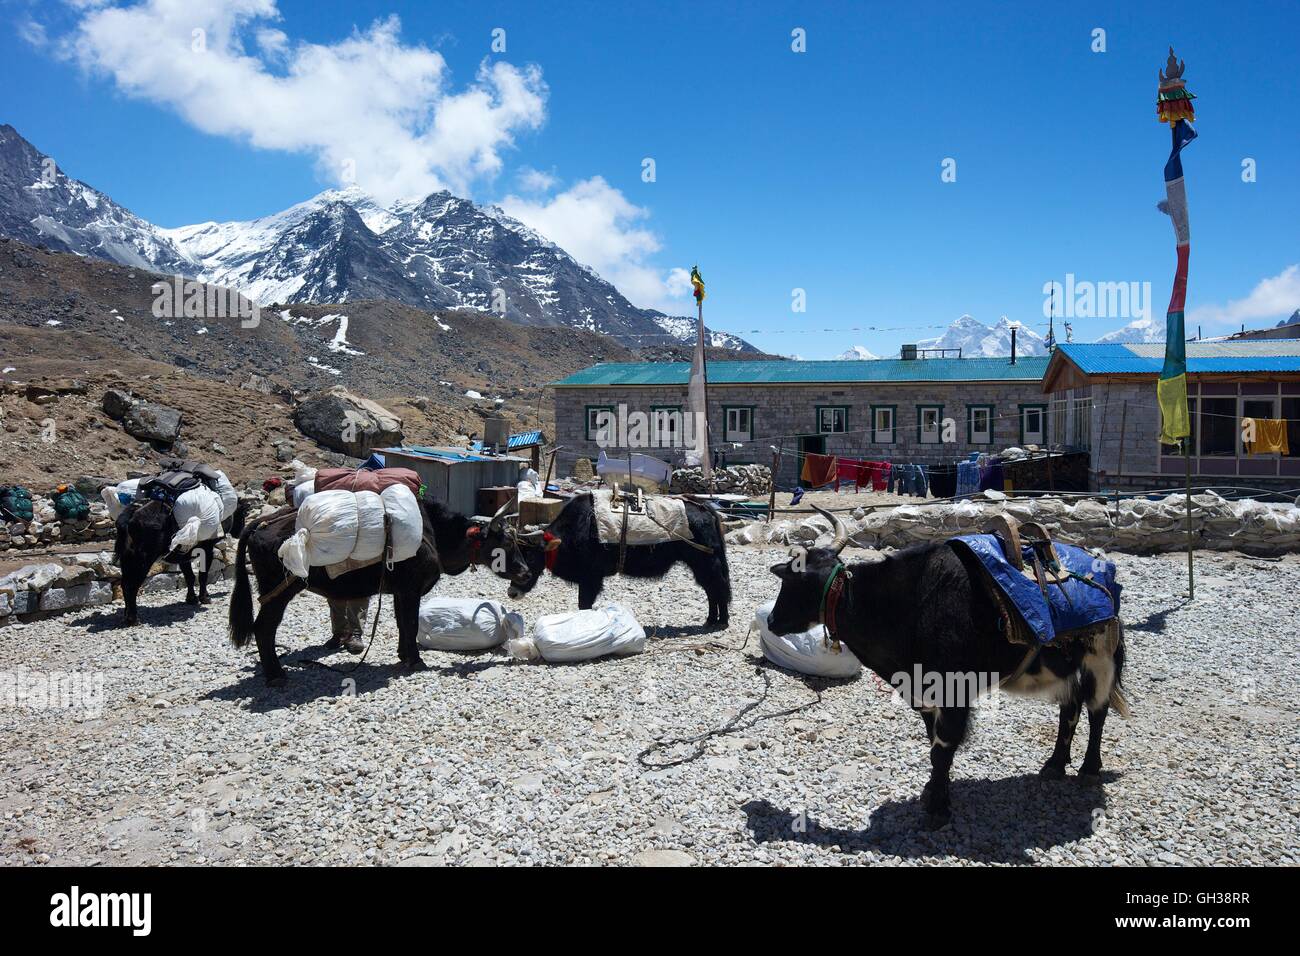 Los yaks aparcado en casa de la madre tierra, lobuche, valle de Khumbu, el parque nacional de Sagarmatha, distrito de Solukhumbu, Nepal, Asia Foto de stock